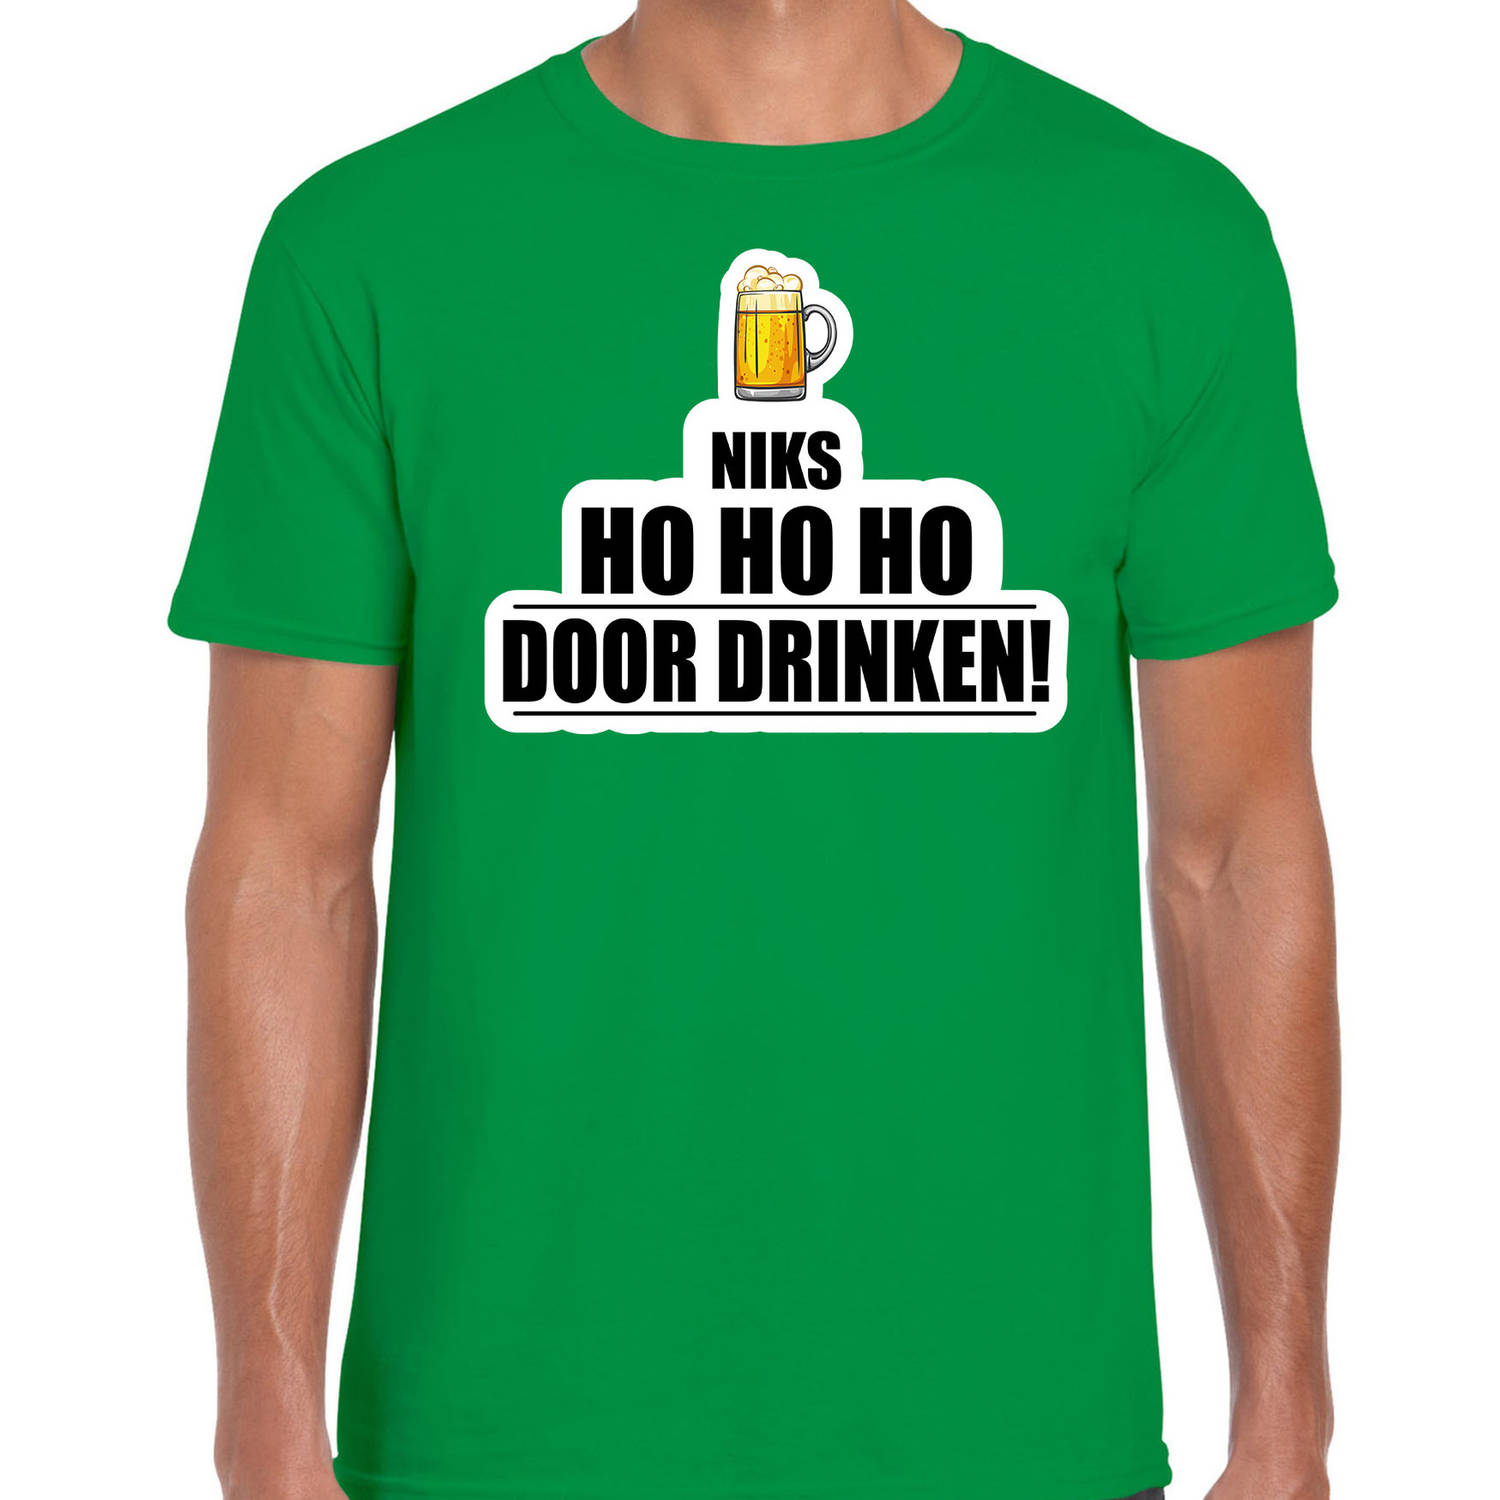 Niks ho ho ho bier doordrinken foute Kerst t-shirt groen voor heren M - kerst t-shirts